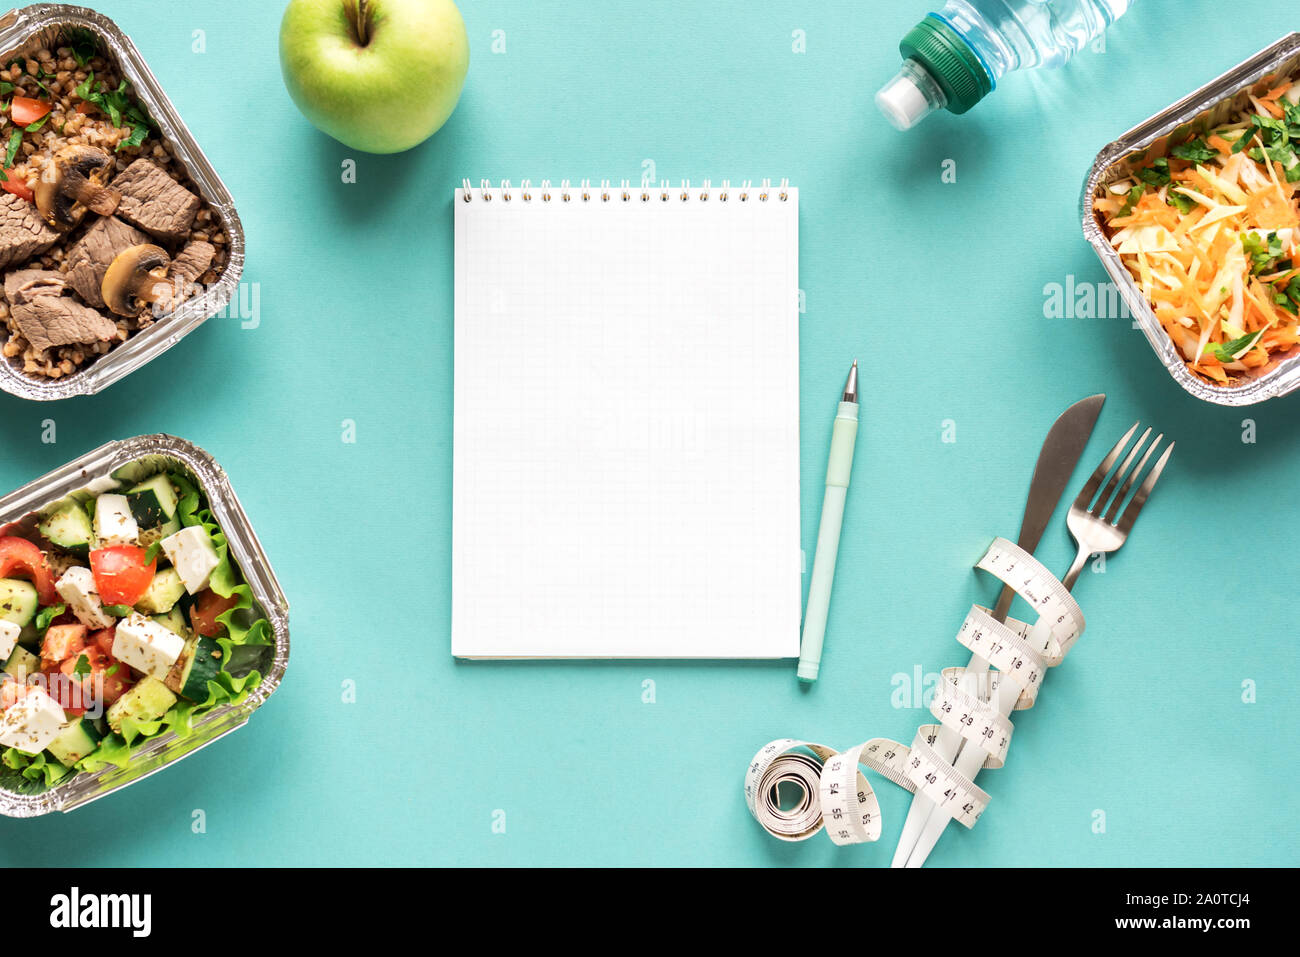 Ernährung Diät Plan flach mit Notebook, Wasser, Obst, gesunde Mahlzeiten und Maßband. Fitness Ernährung, gesunde Lebensweise, Ernährung Konzept auf Blu Stockfoto